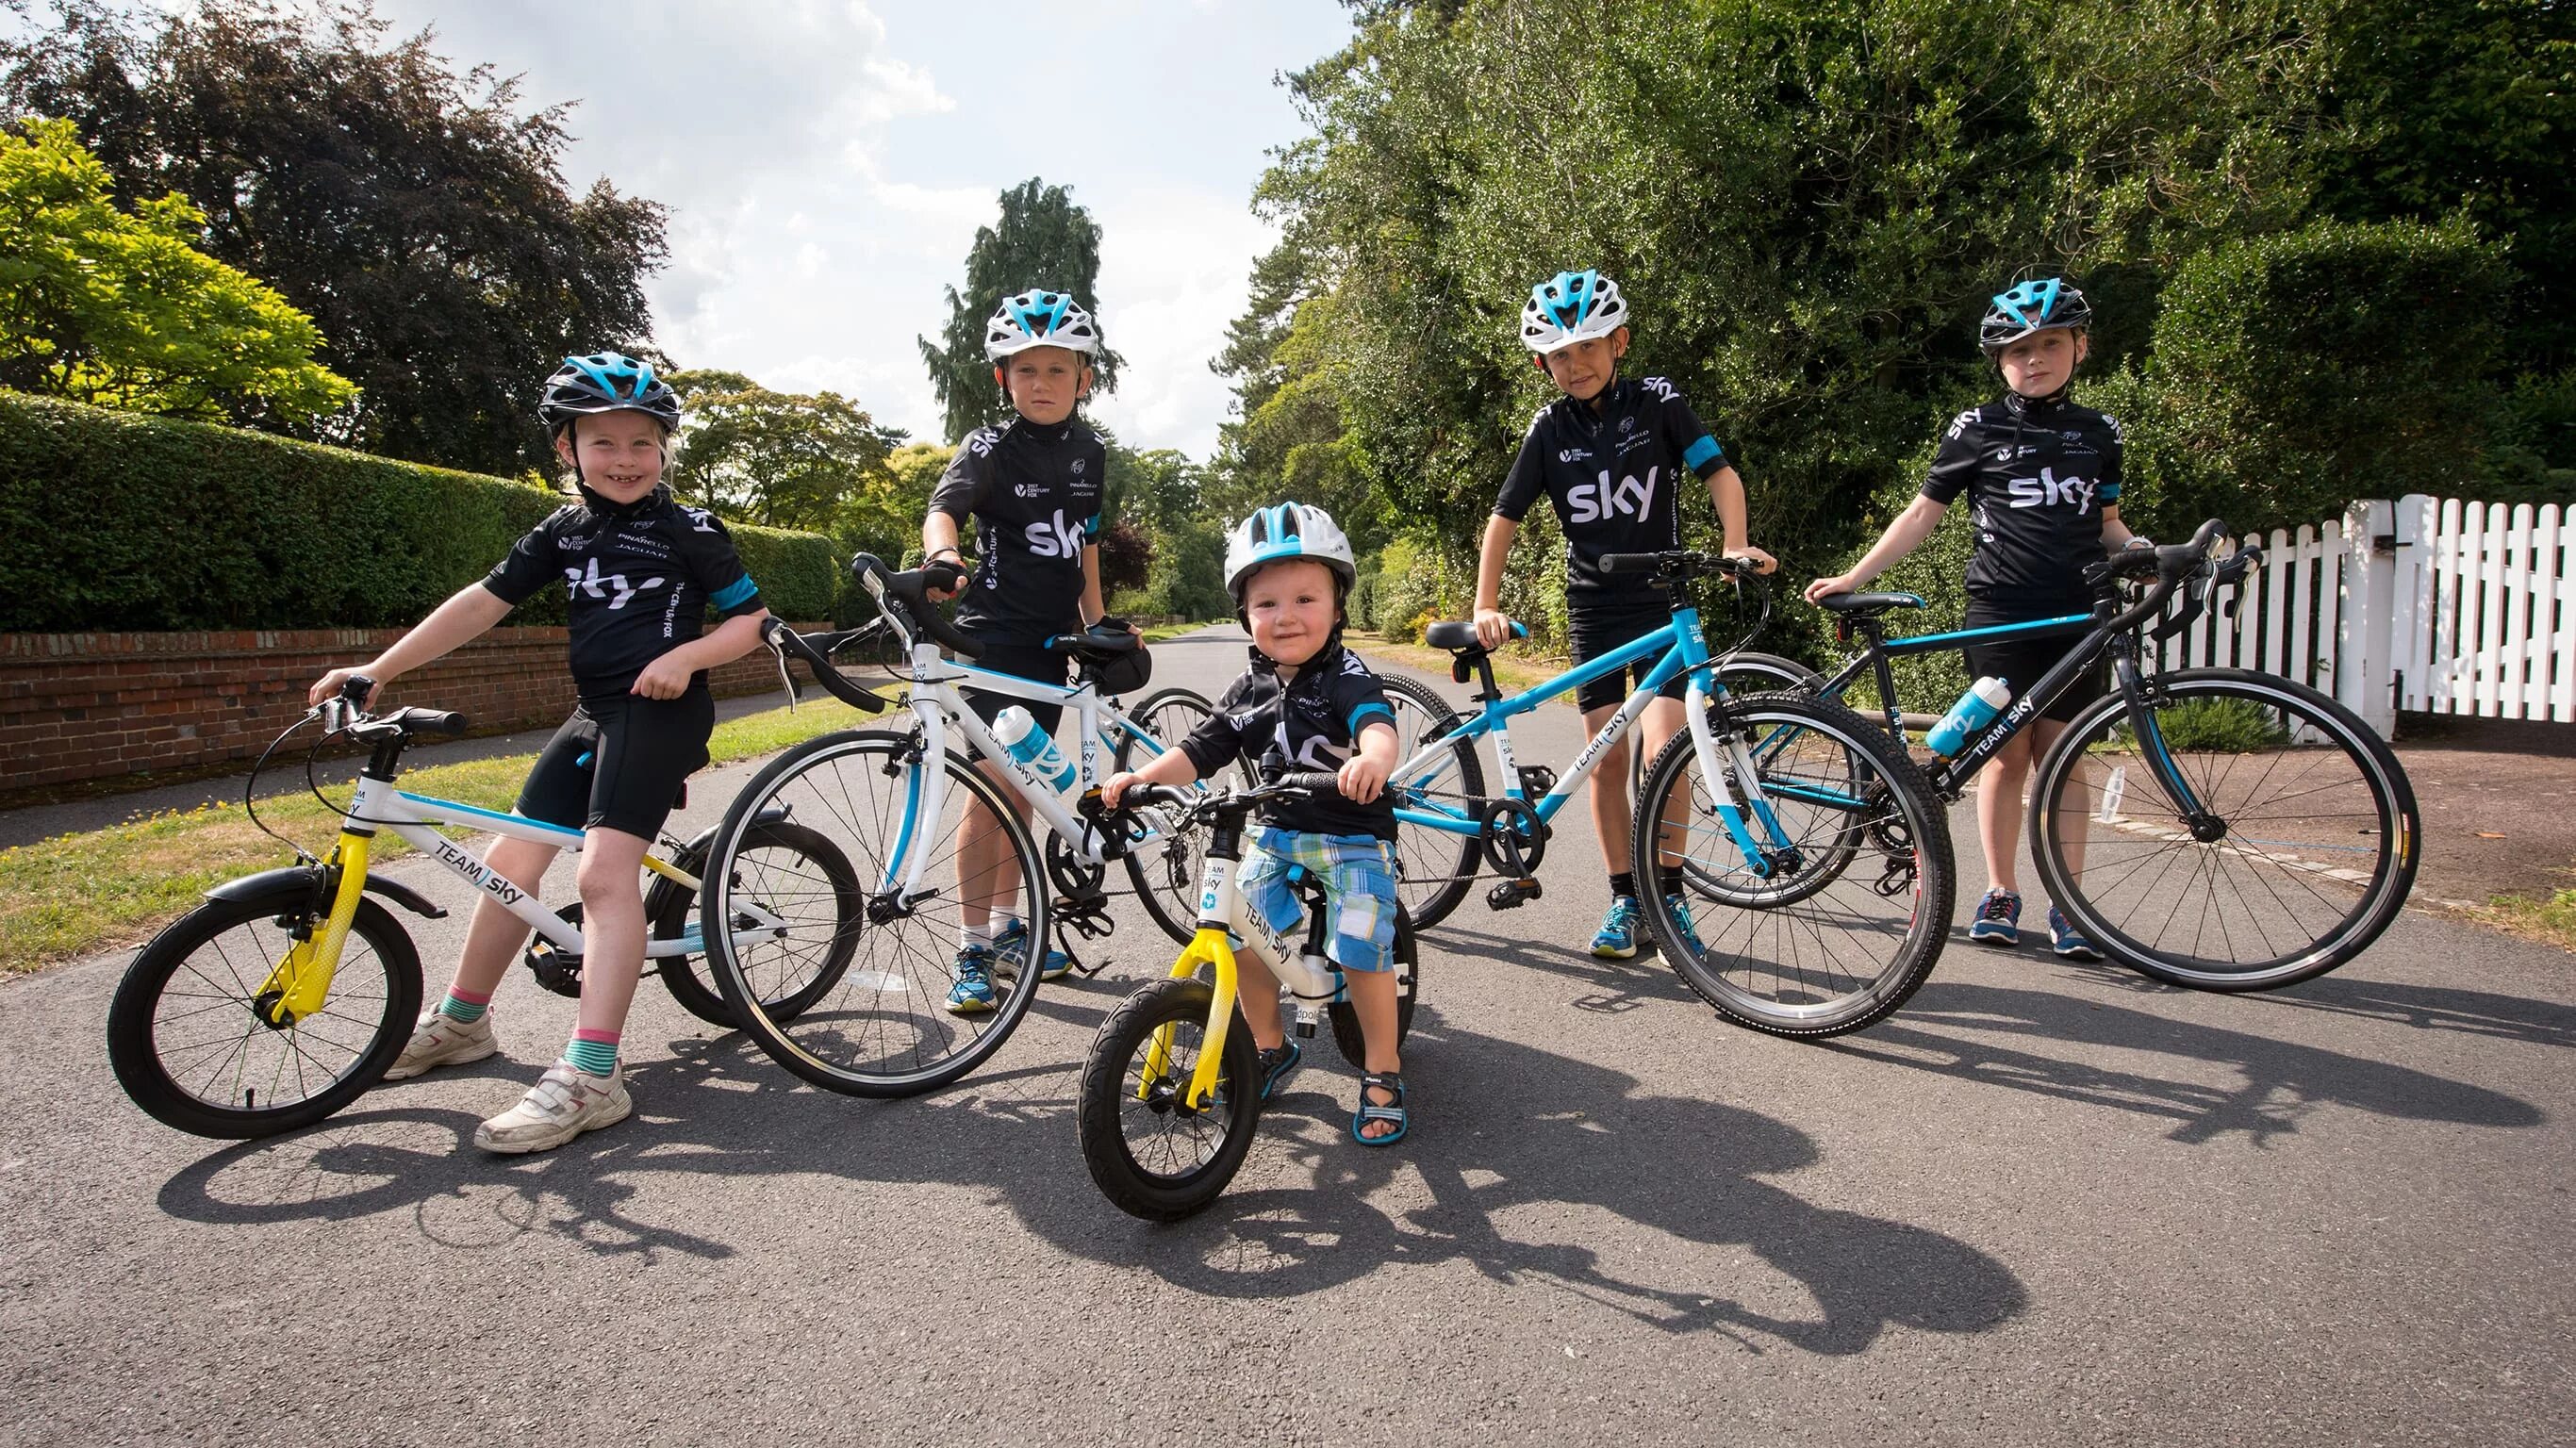 Детского велосипеда колесо 8. Frog Team Sky 52 велосипед. Велоспорт для детей. Дети с велосипедом. Велосипед для велоспорта.